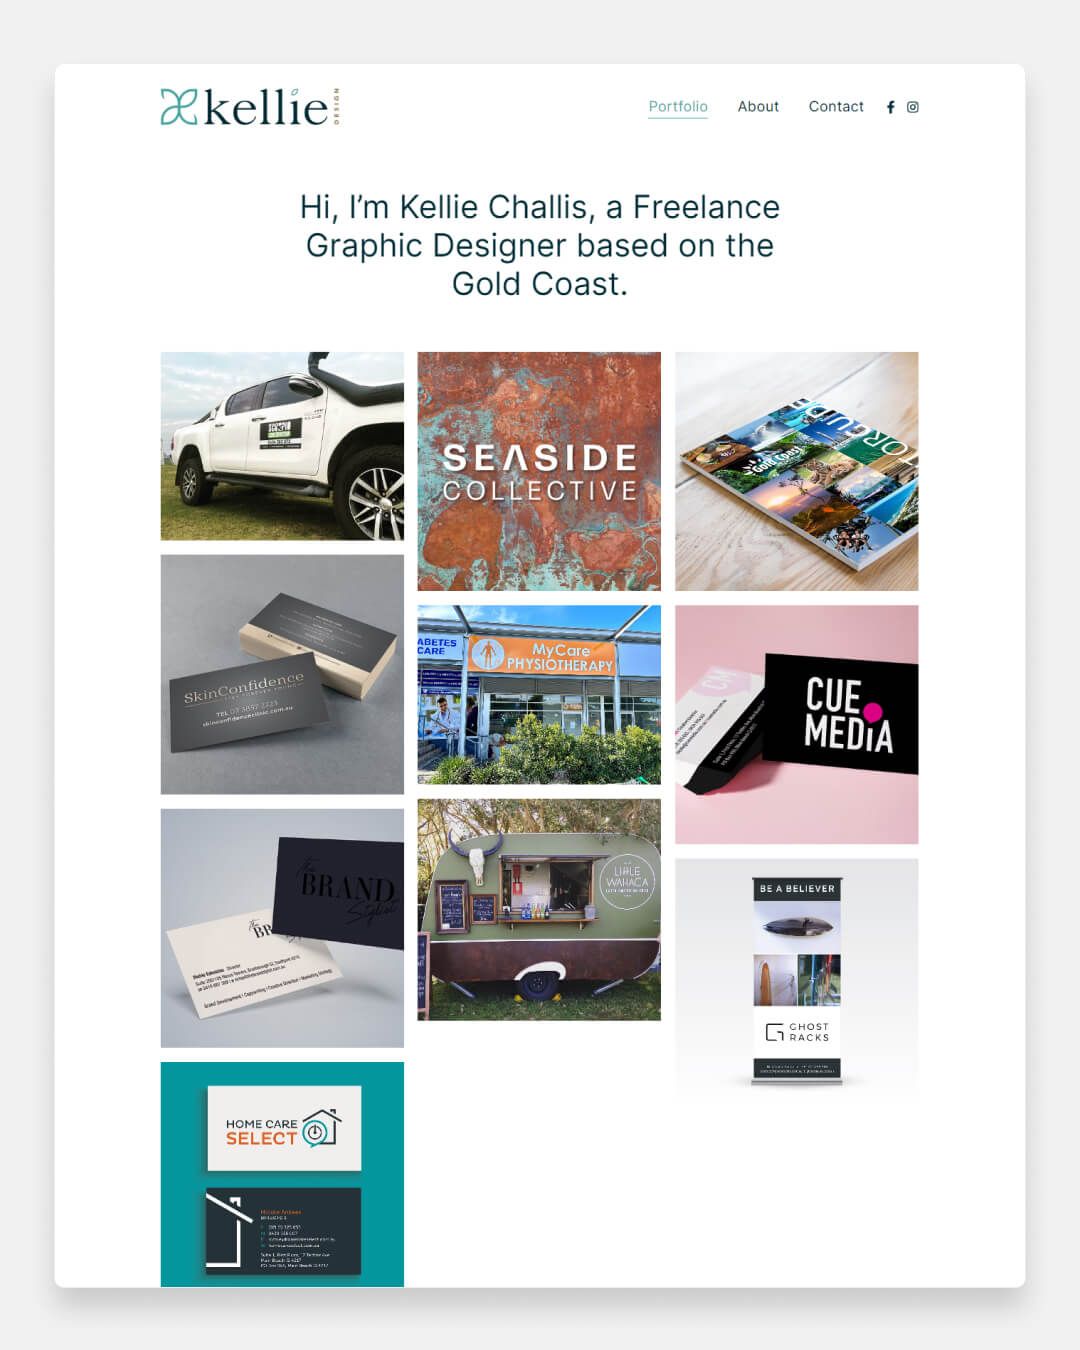 Kellie Challis - Freelance ontwerperportfolio